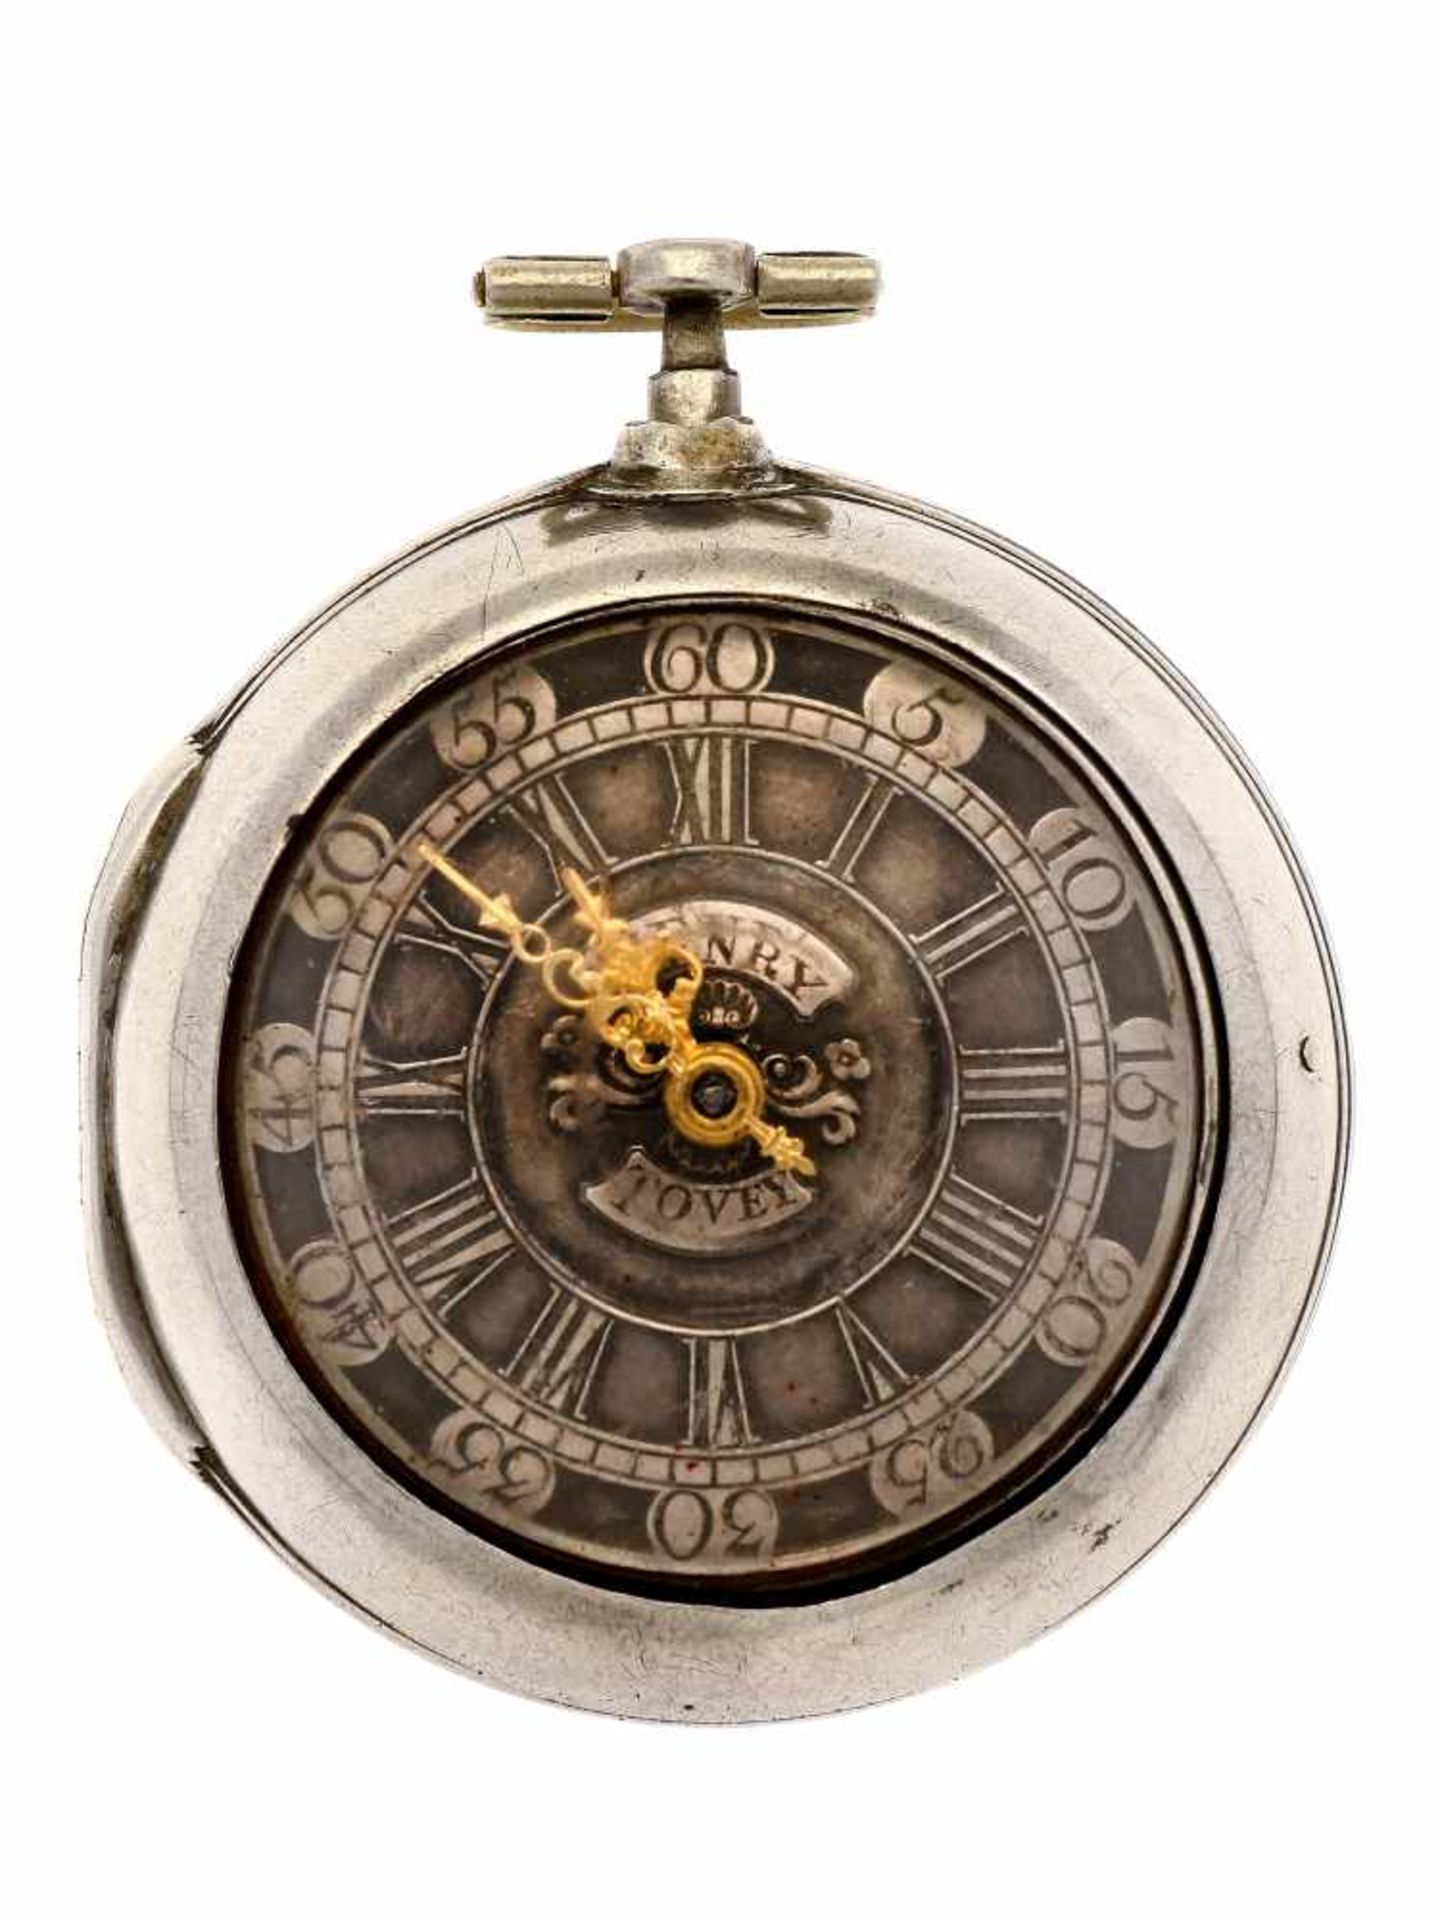 Pocket watch silver, Henry Tovey, Geo Clarke London - Men's pocket watch - Manual winding - Ca.